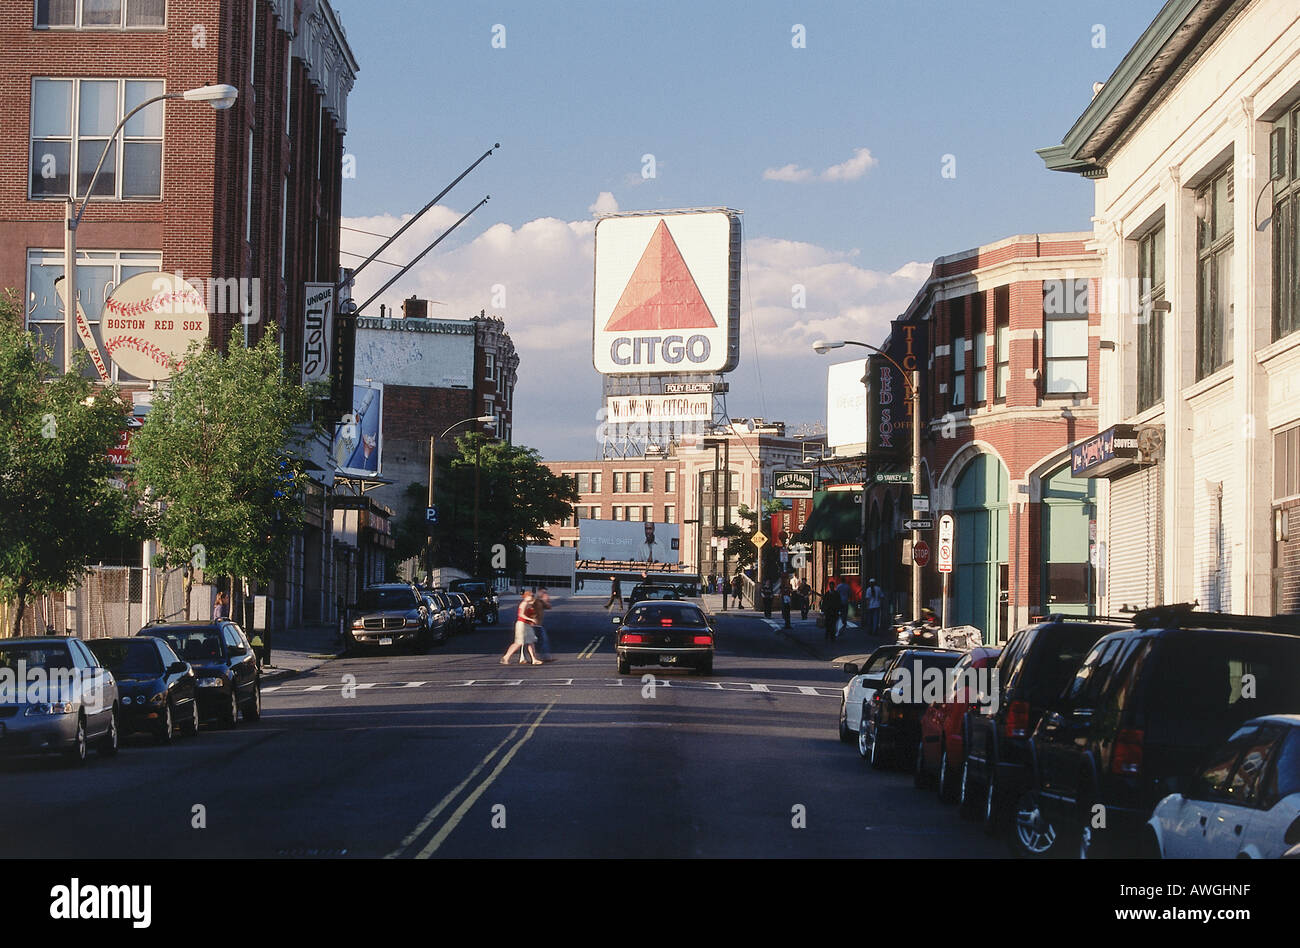 Stati Uniti d'America, Massachusetts, Boston, Kenmore Square, CITGO segno, prominente punto di riferimento che domina la zona è molto trafficata di Boston foderato con macchine parcheggiate Foto Stock